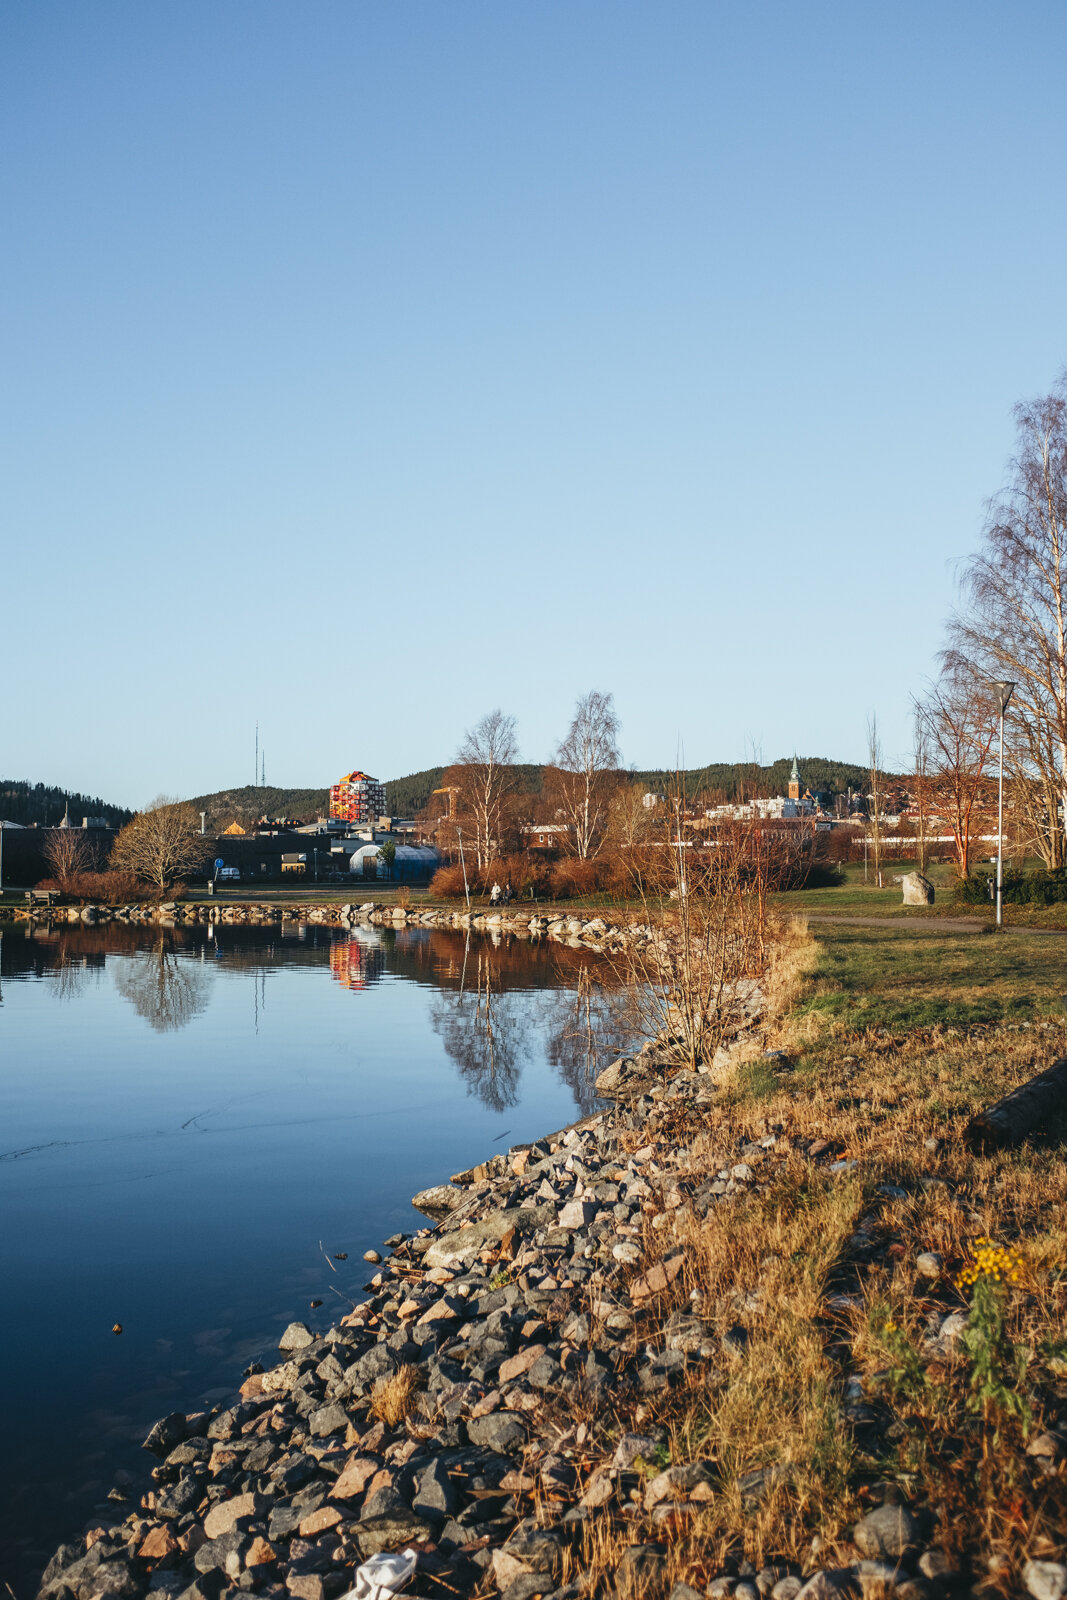  Nov, 26th 2020 Örnsköldsvik, Sweden 